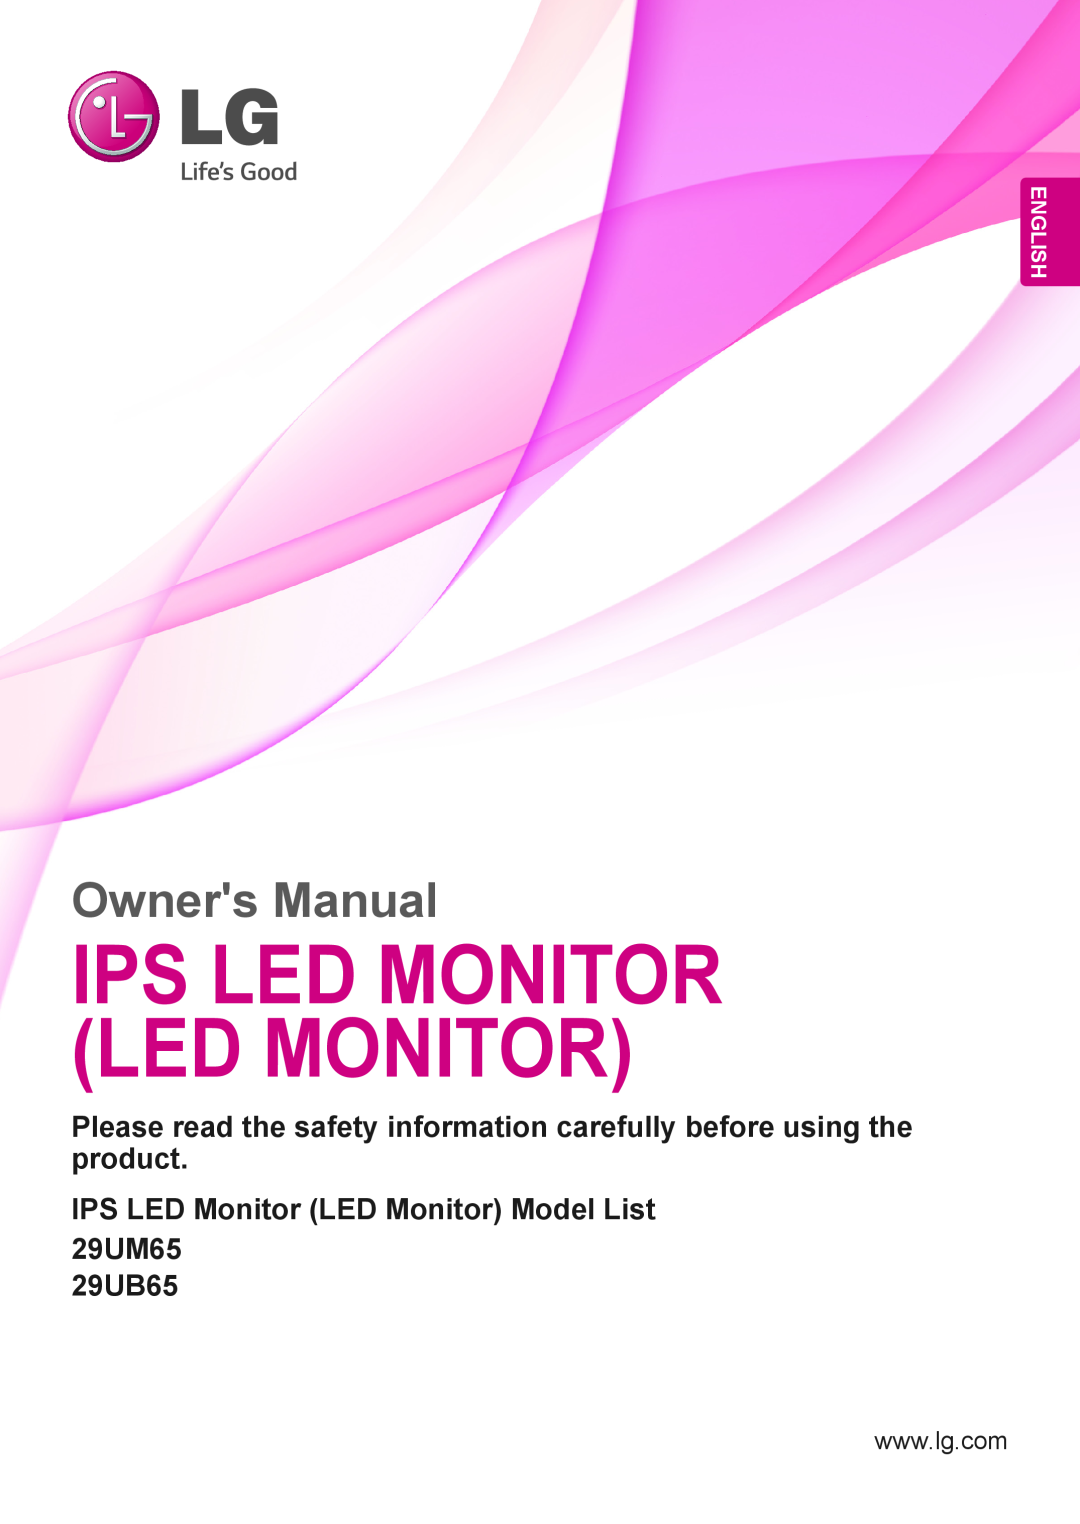 LG Electronics owner manual Ips Led Monitor Led Monitor, IPS LED Monitor LED Monitor Model List 29UM65, 29UB65, English 